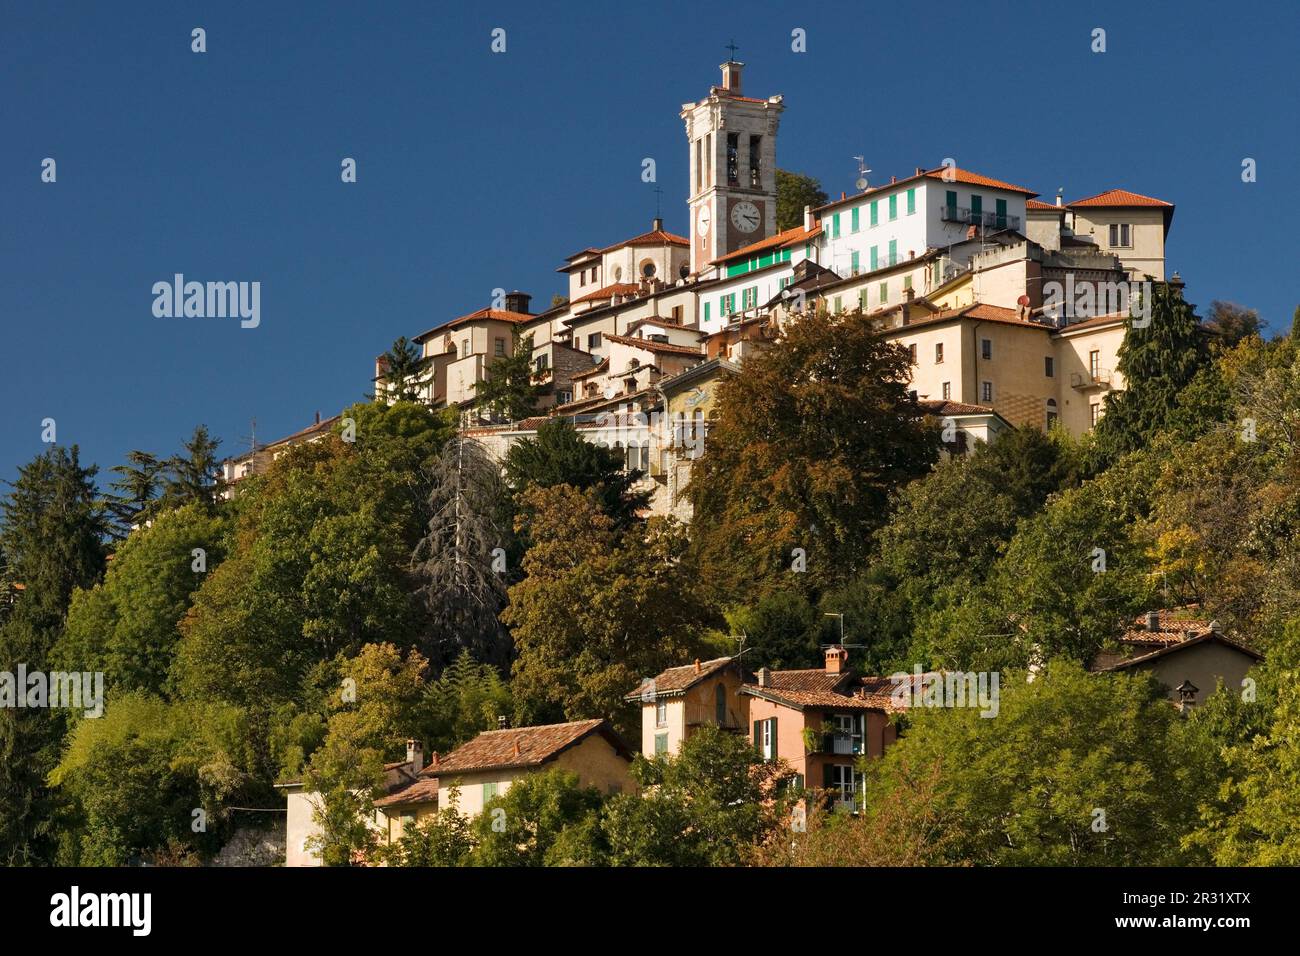 El santuario de Santa María del Monte con la iglesia del mismo nombre en la montaña sagrada (Sacro Monte) de Varese. Foto de stock